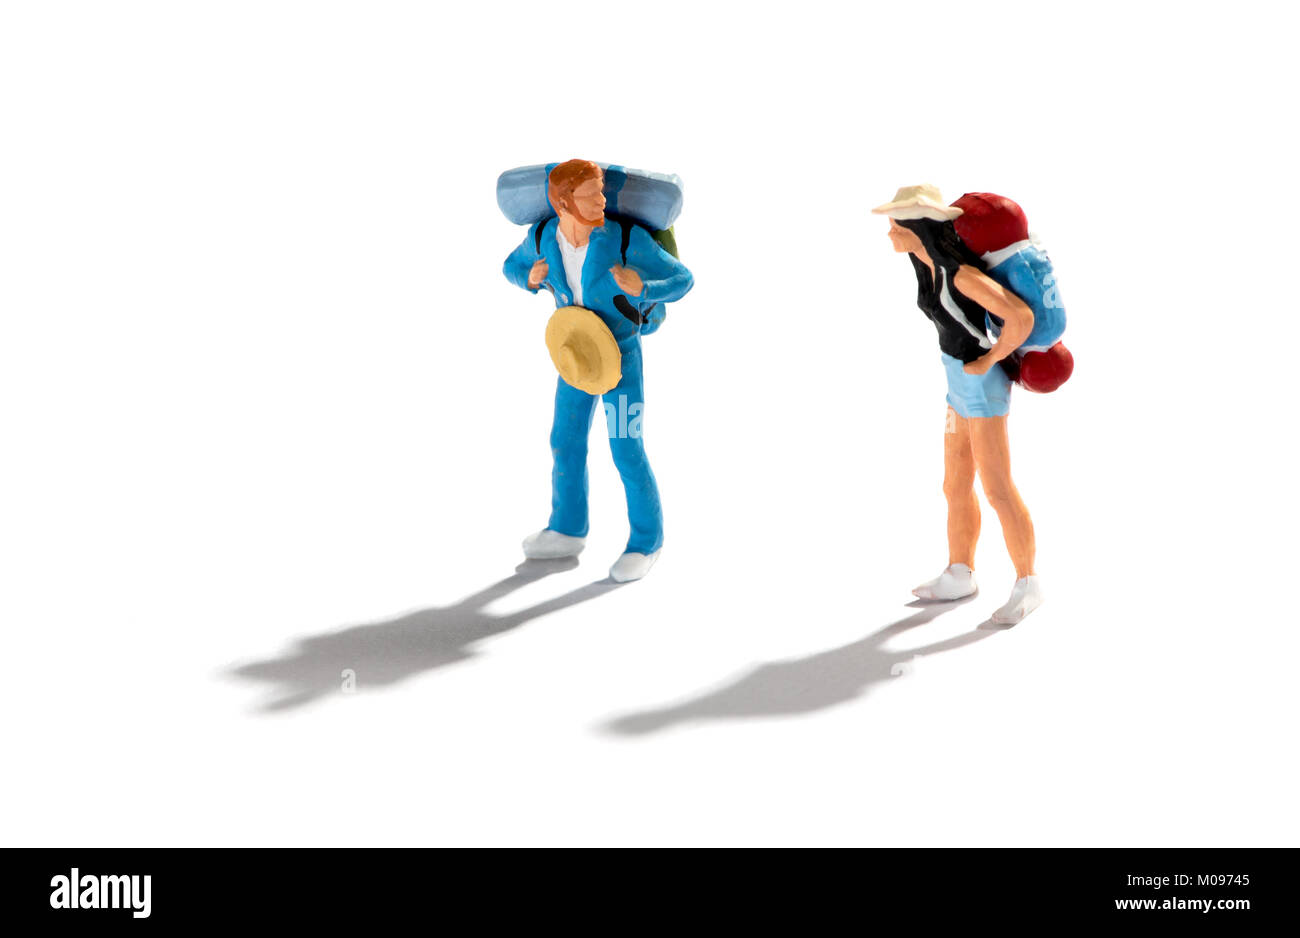 Miniatura le figure di due turisti o viaggiatori con lo zaino in spalla su sfondo bianco con ombre in piedi che guarda ad ogni altro in un concetto di vacanze, viaggi Foto Stock